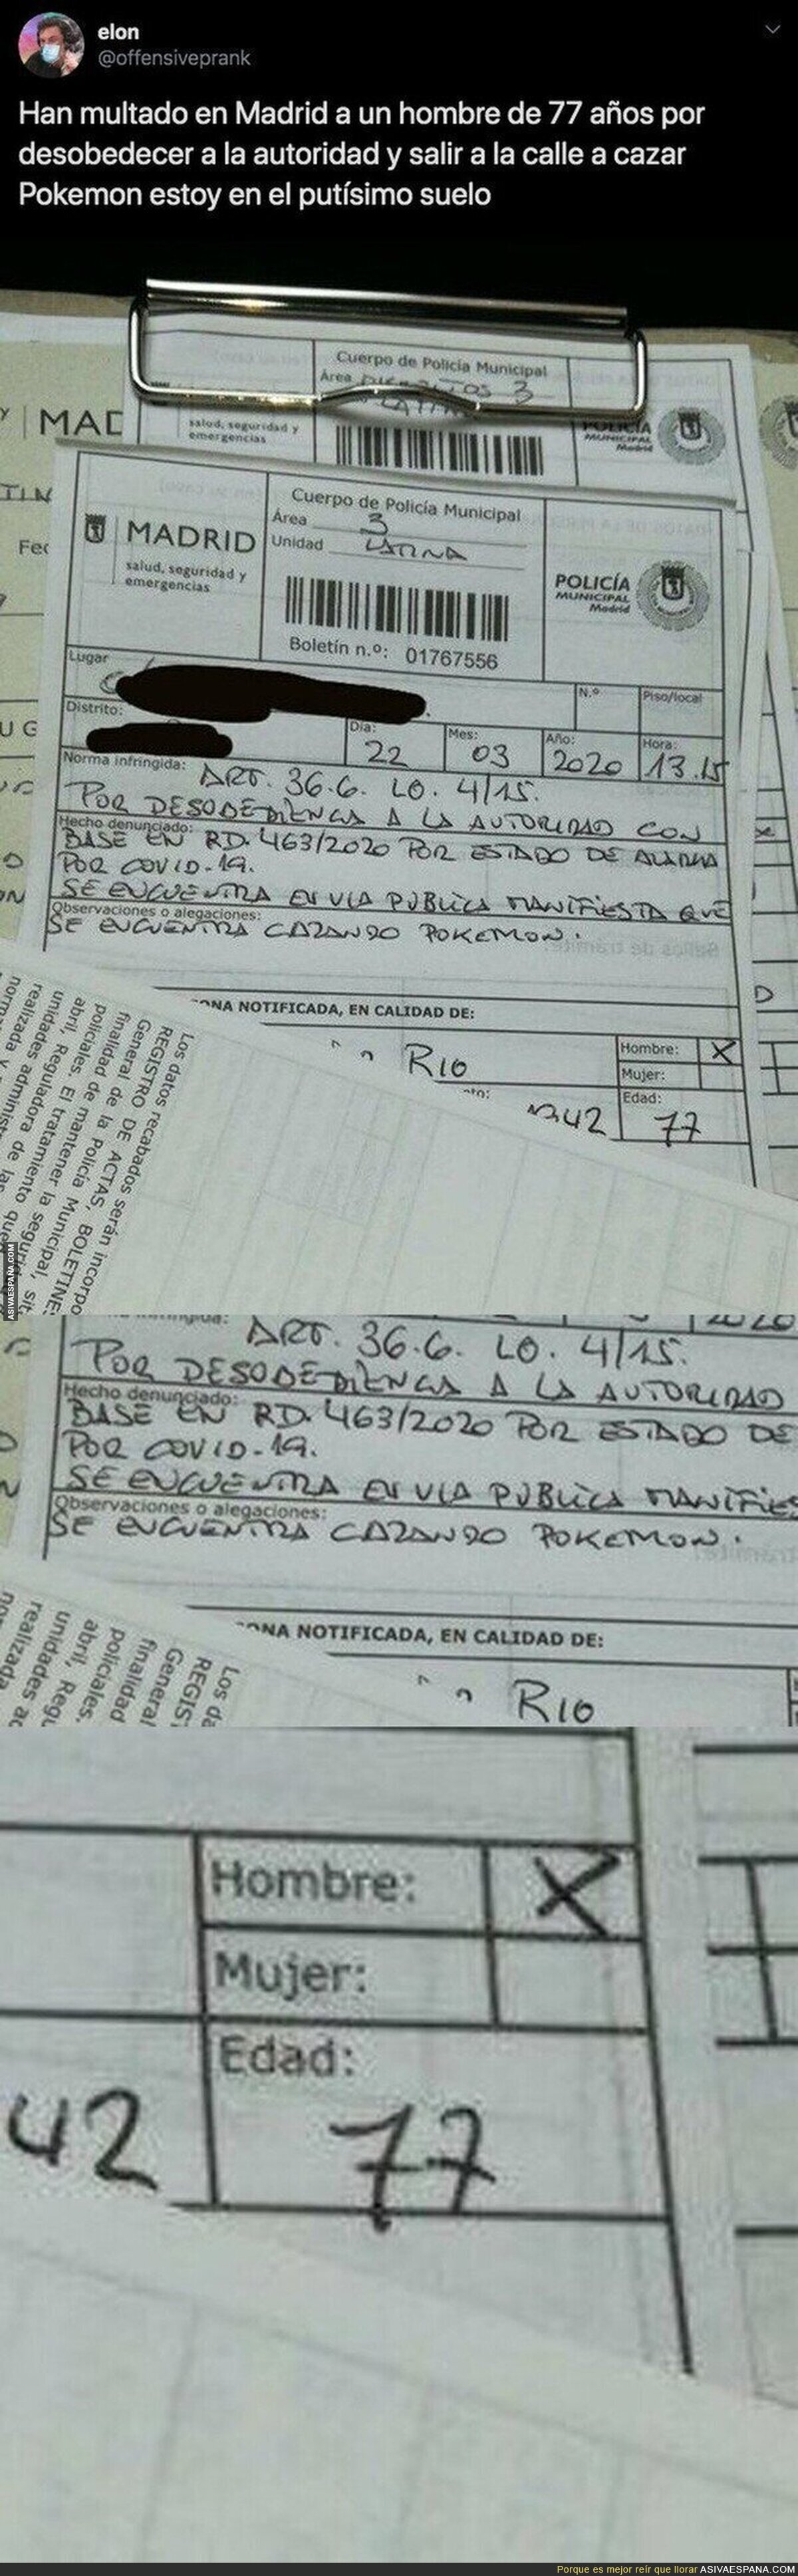 Surrealista total: han multado a un señor de 77 años por las calles de Madrid por cazar Pokémon y este es el parte de la multa